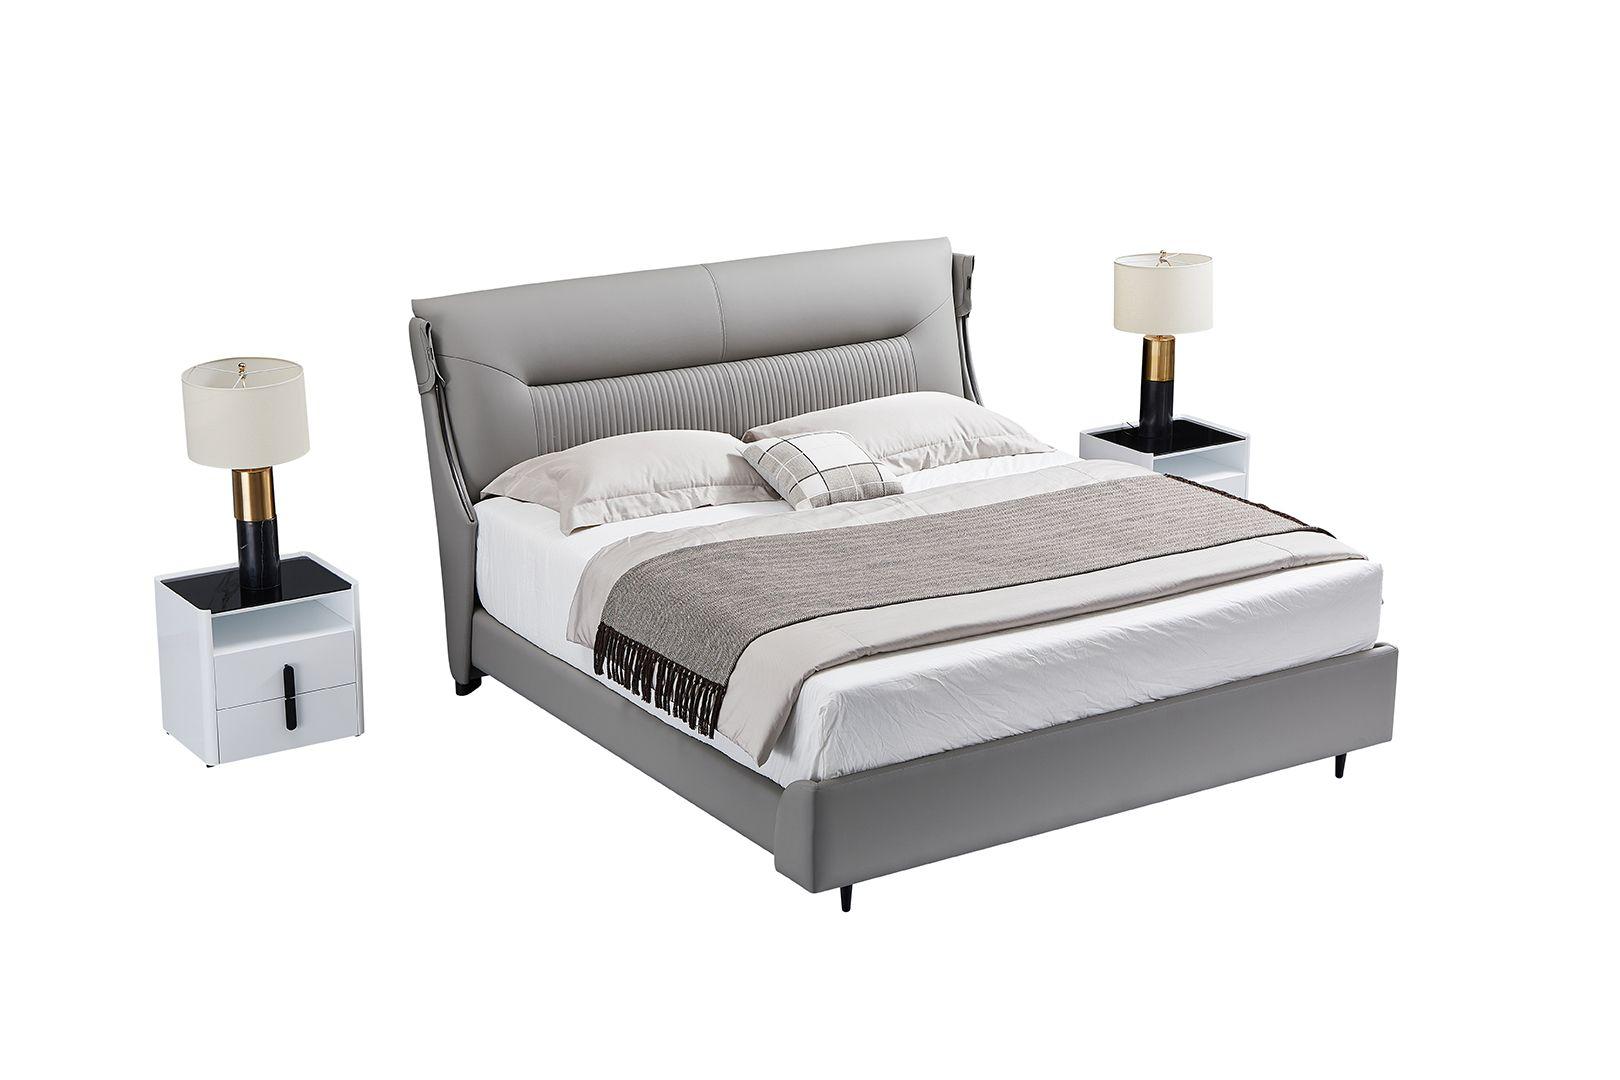 

    
American Eagle Furniture B-Y2001-Q Platform Bed Gray B-Y2001-Q
